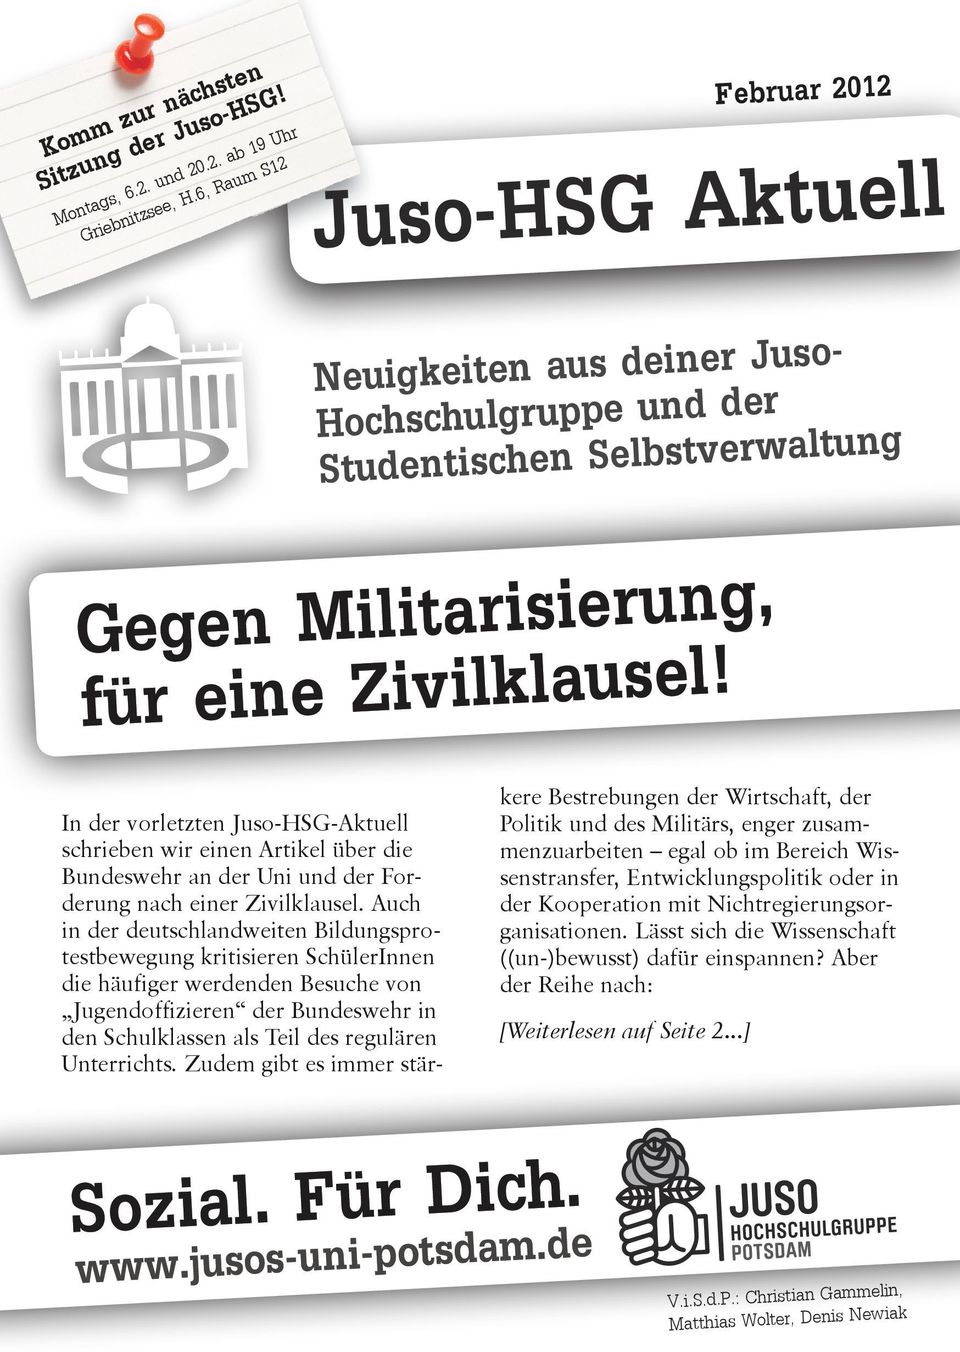 In der vorletzten Juso-HSG-Aktuell schrieben wir einen Artikel über die Bundeswehr an der Uni und der Forderung nach einer Zivilklausel.